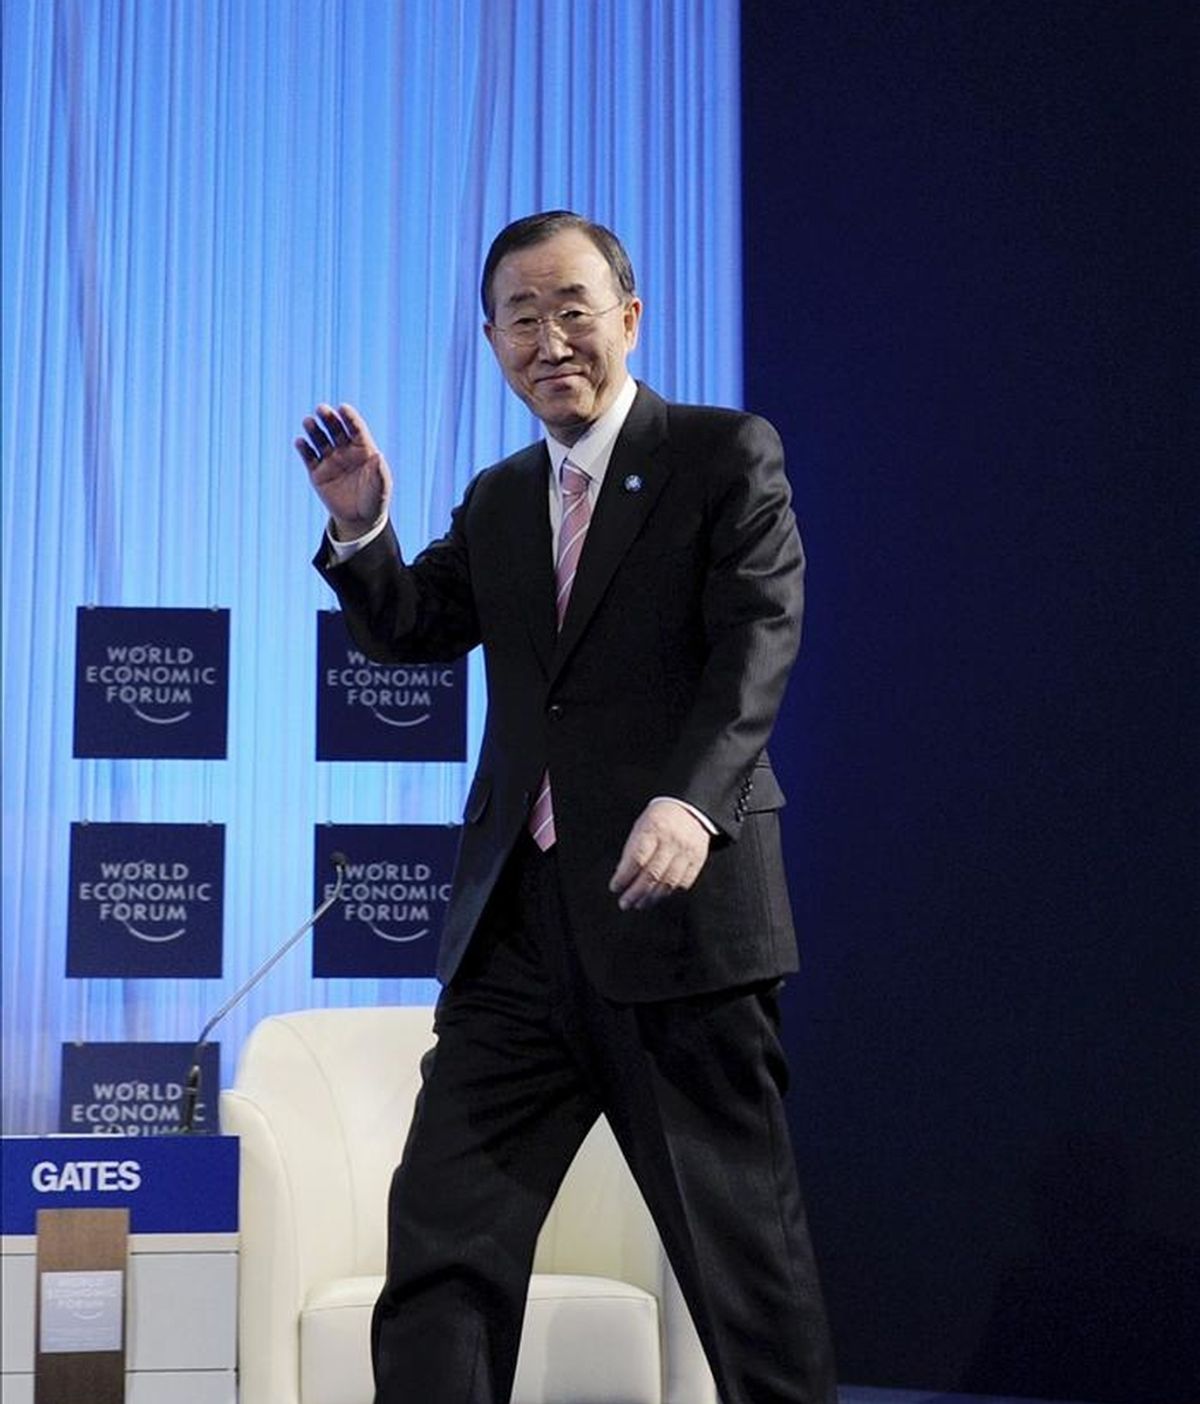 El secretario general de la ONU, Ban Ki moon, llega a uno de los debates del Foro Económico Mundial que se celebra en Davos (Suiza), hoy, 28 de enero de 2011. EFE